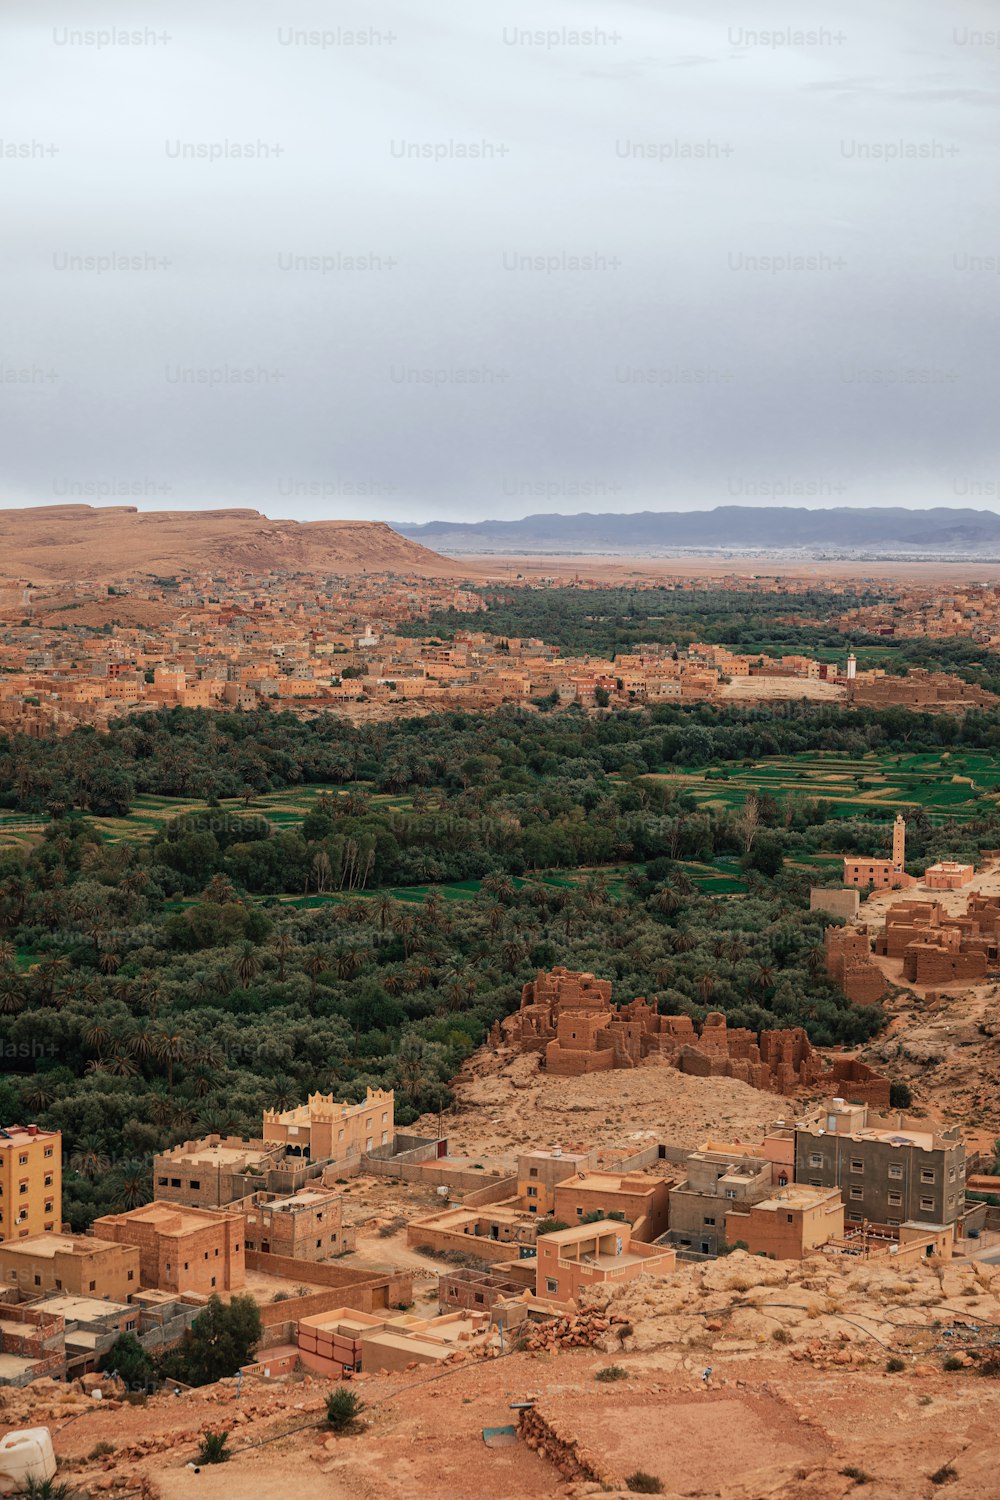 uma vista de uma pequena aldeia no meio de um deserto